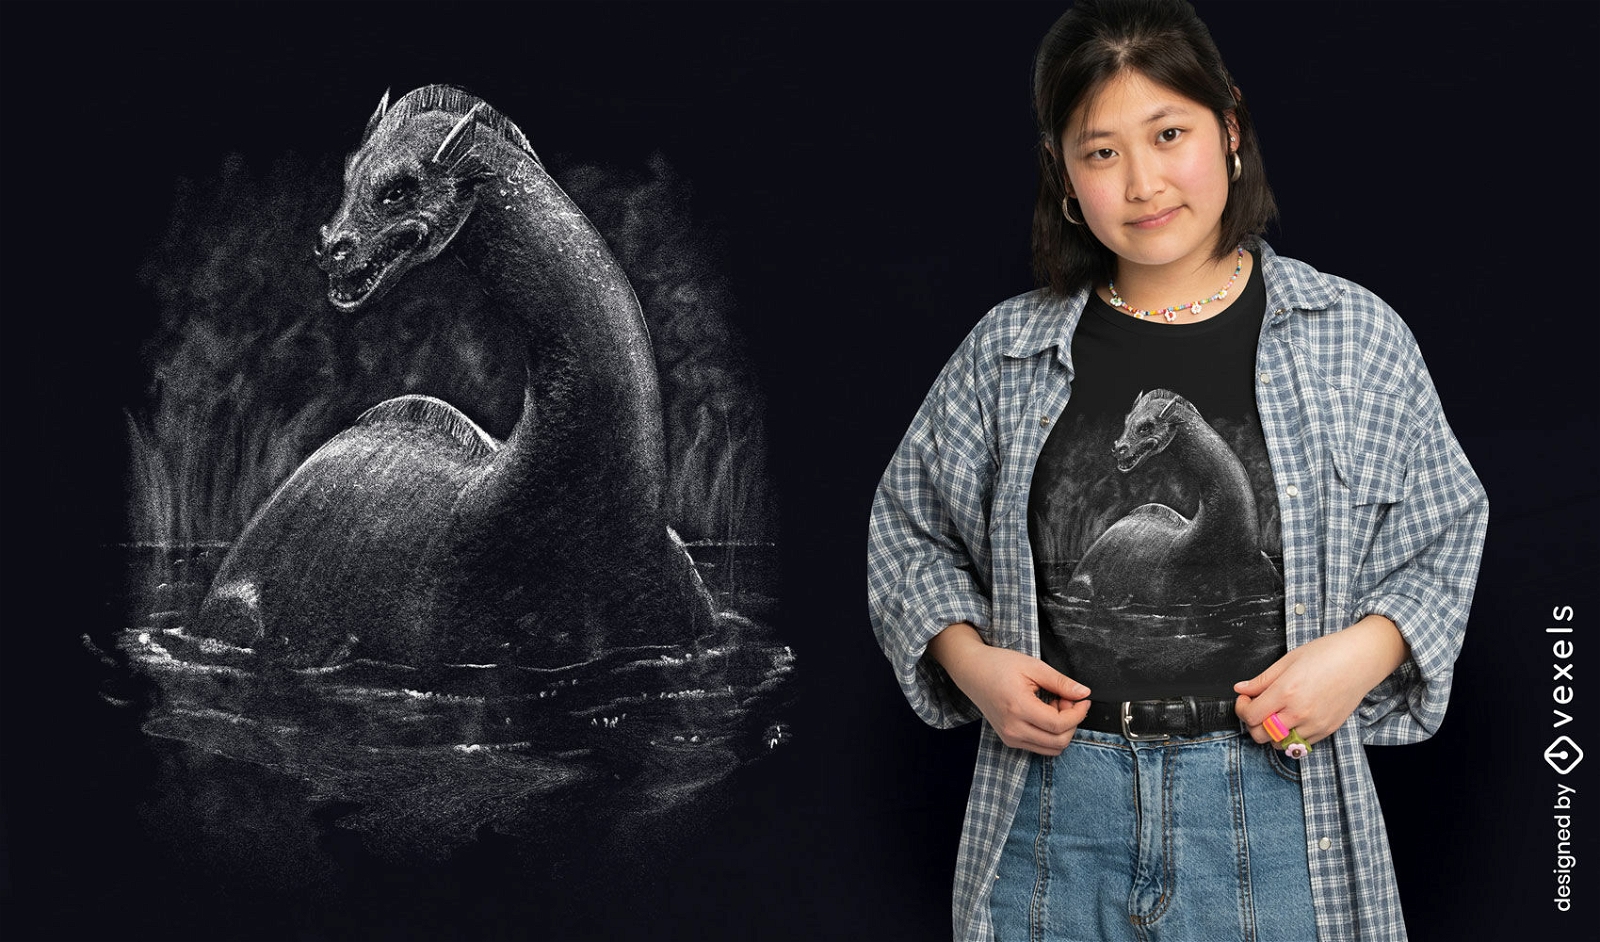 Diseño de camiseta realista del monstruo del lago ness